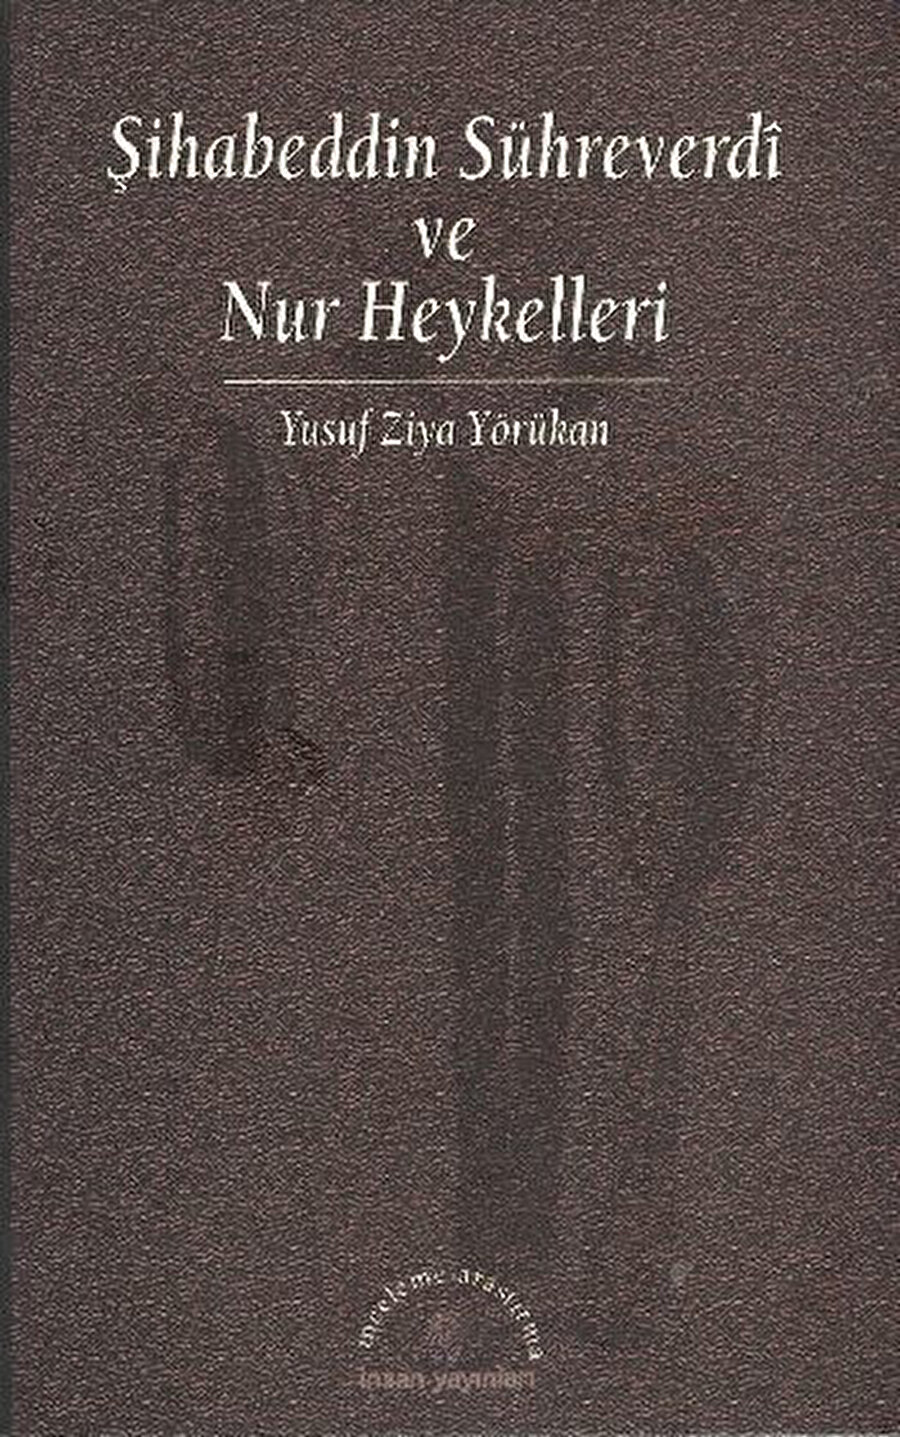 Şihabeddin Sühreverdi ve Nur Heykelleri, Yusuf Ziya Yörükan, İnsan, 1998